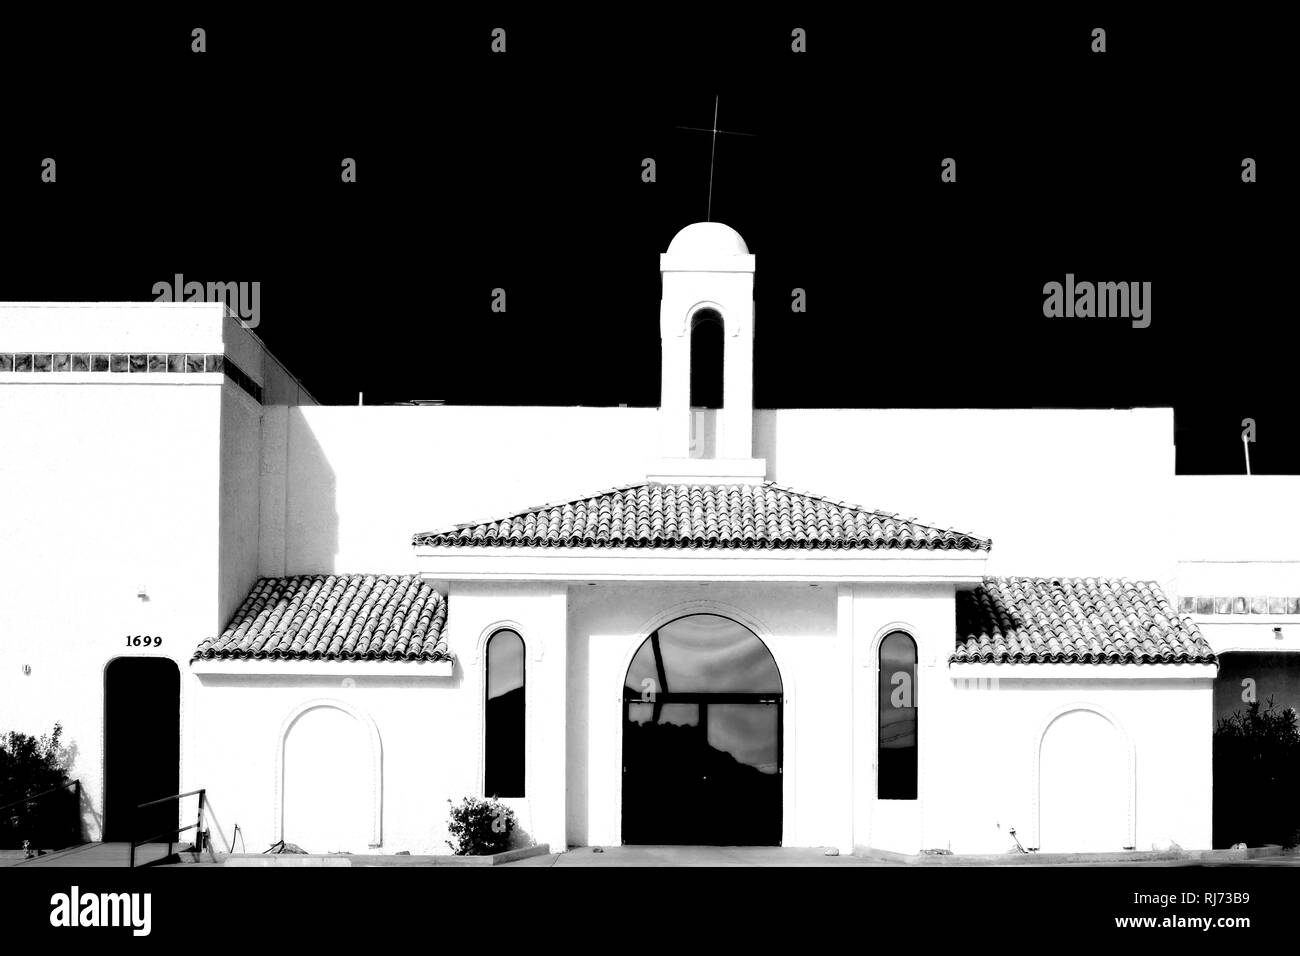 Eine Kirche im spanischen Stil mit weißen Wänden und schlichter Bauweise im Kontrast zur Dunkelheit, Stock Photo